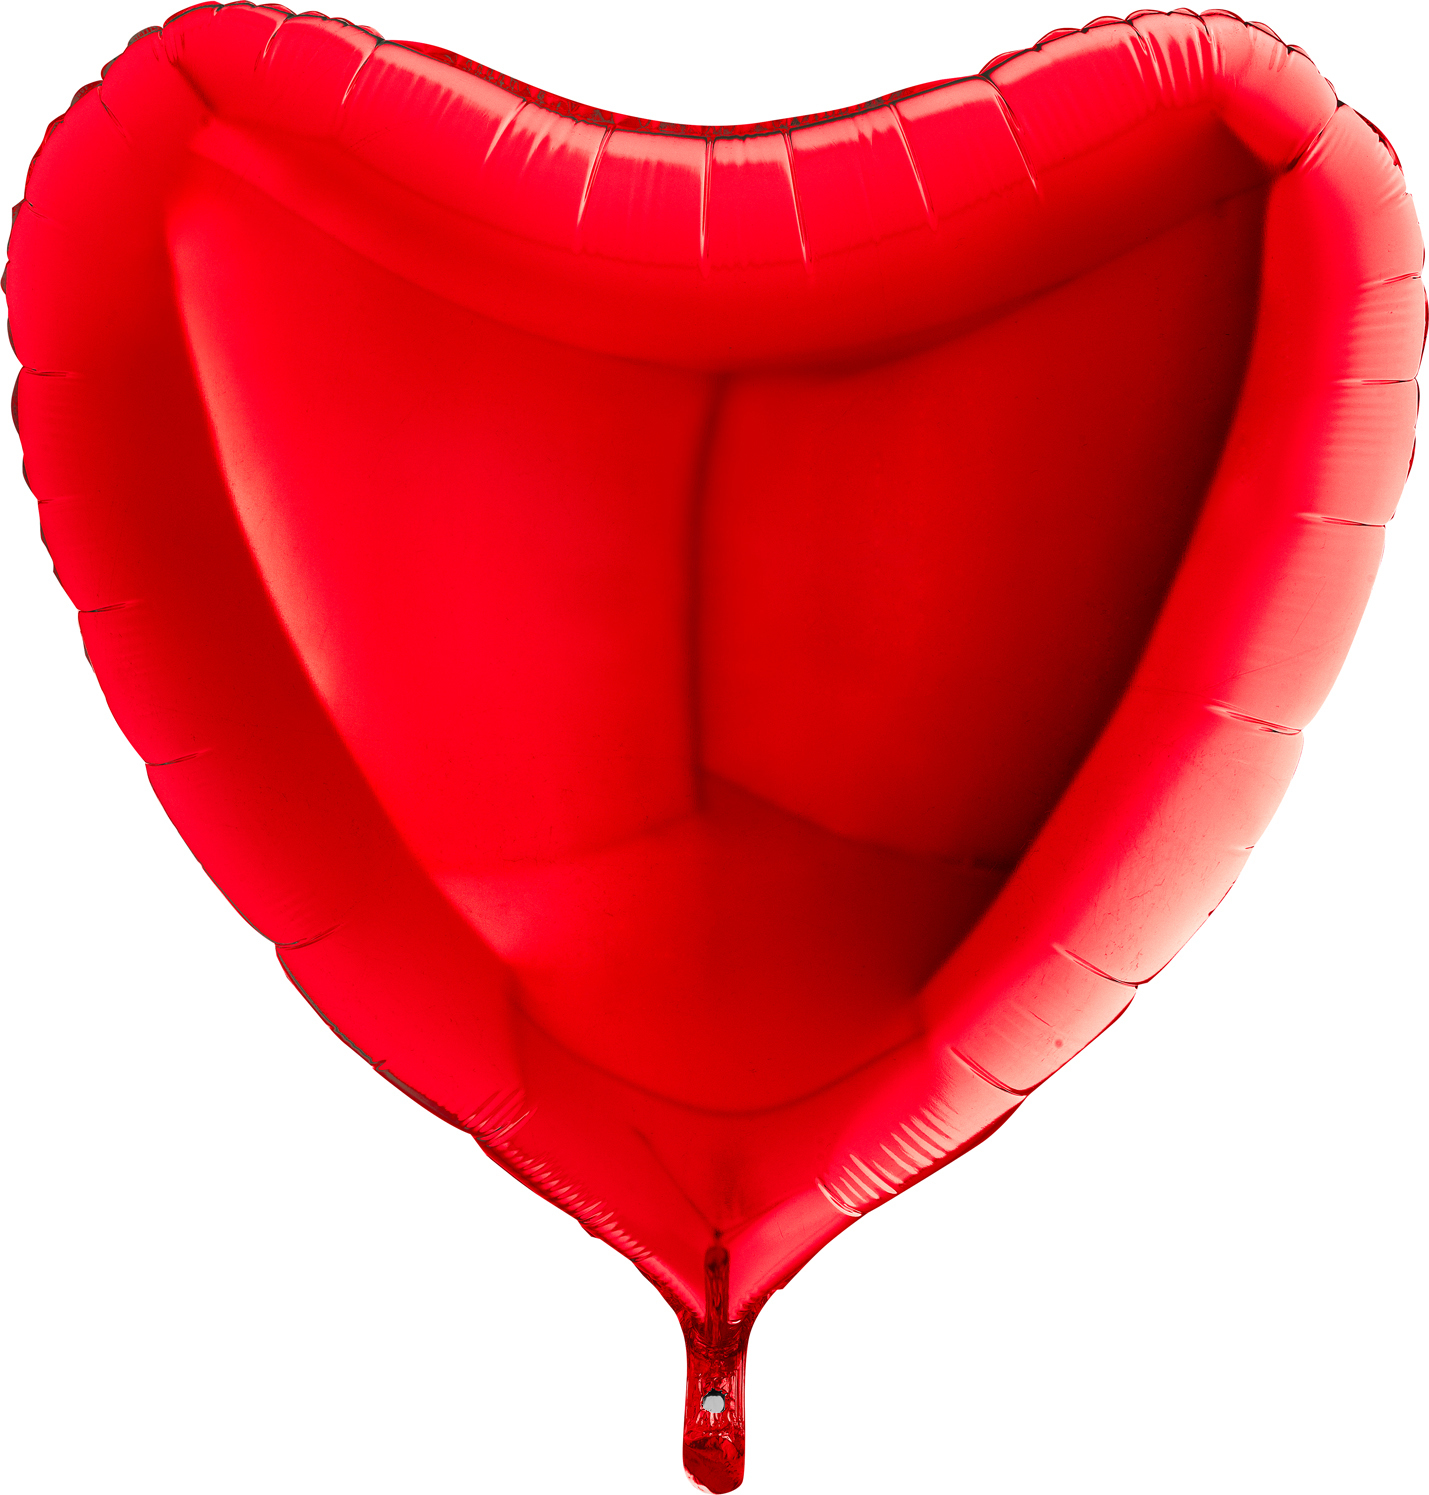 Фольгированные шары см. Шар сердце 91 см. Шар воздушный 91см красный. Шар красное сердце. Красные фольгированные сердца.